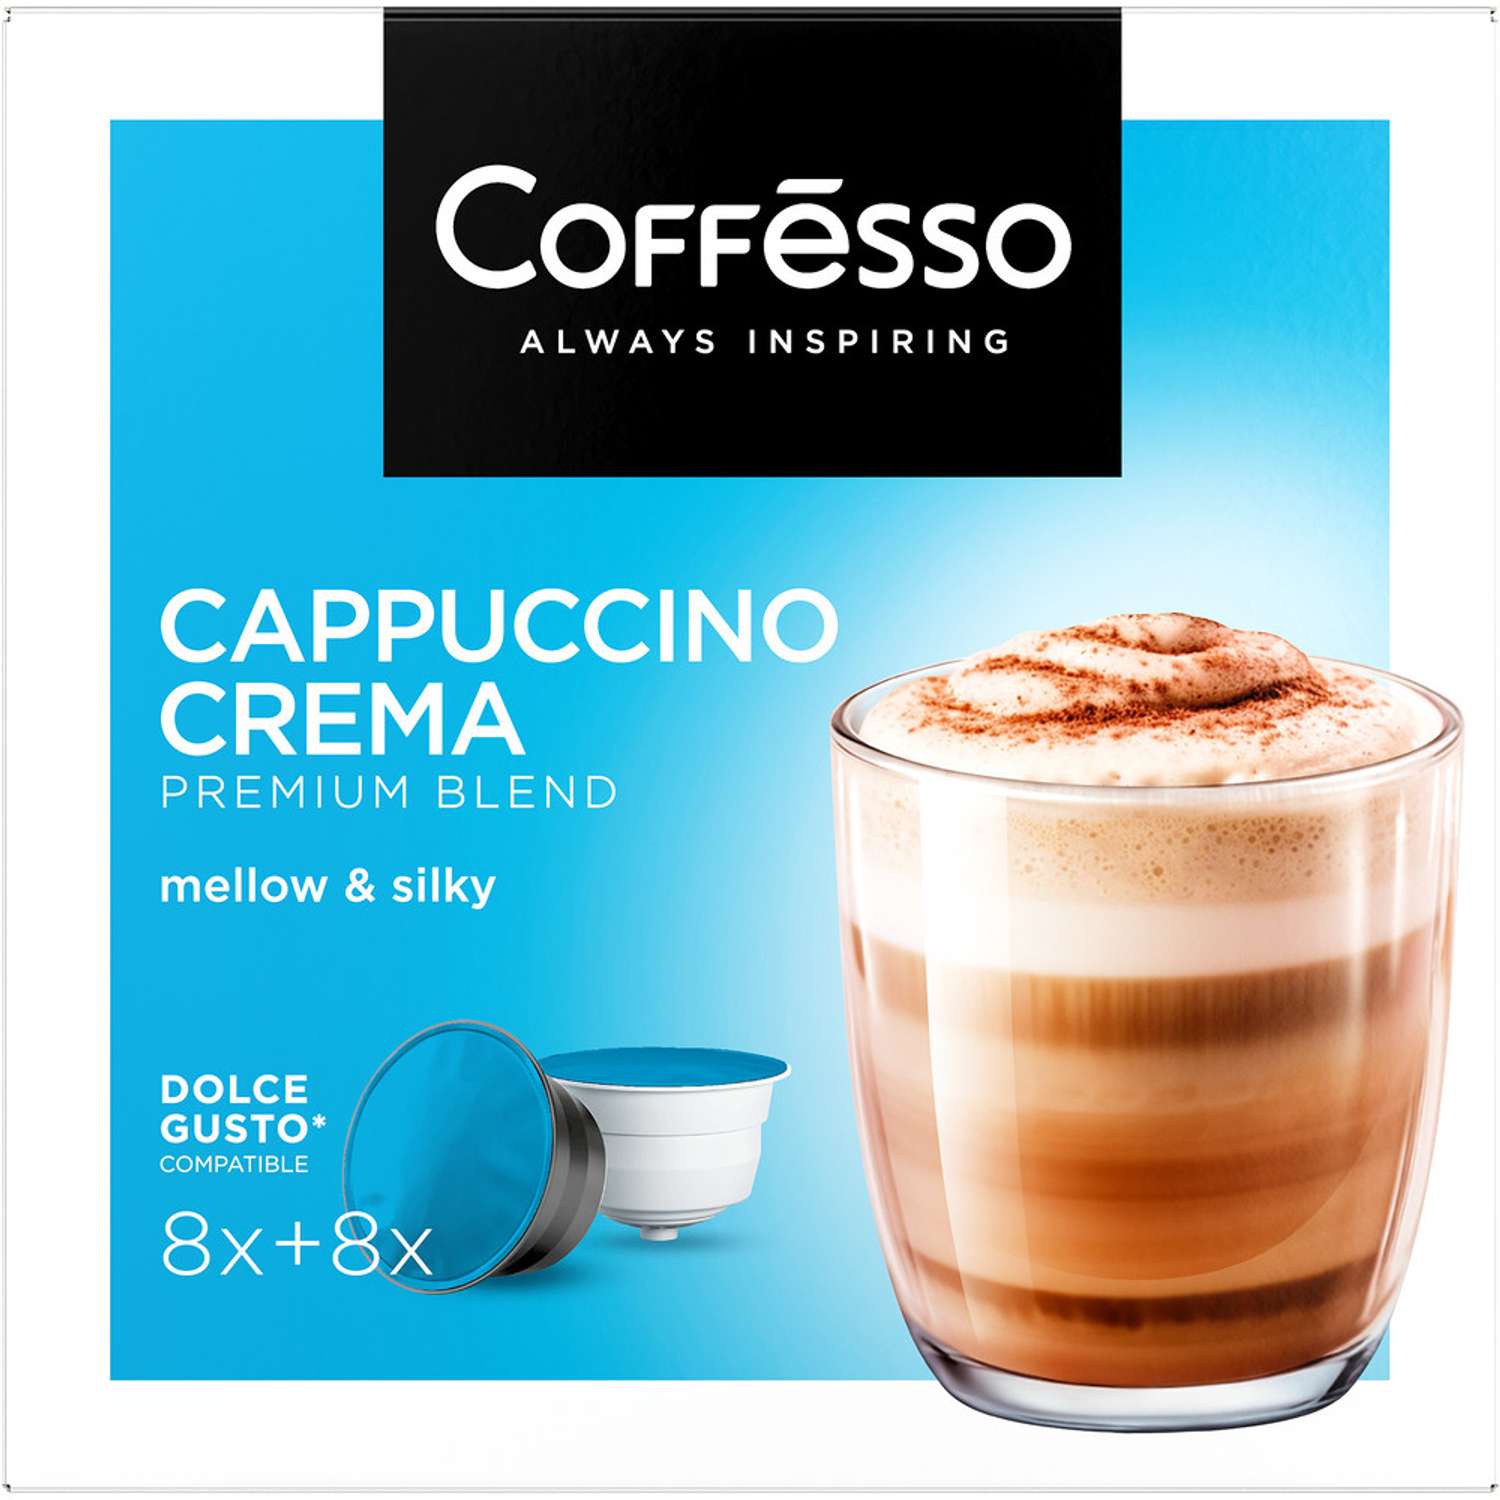 Кофе в капсулах Coffesso Сappuccino Crema Набор для приготовления кофейного напитка 200г капсула - фото 2